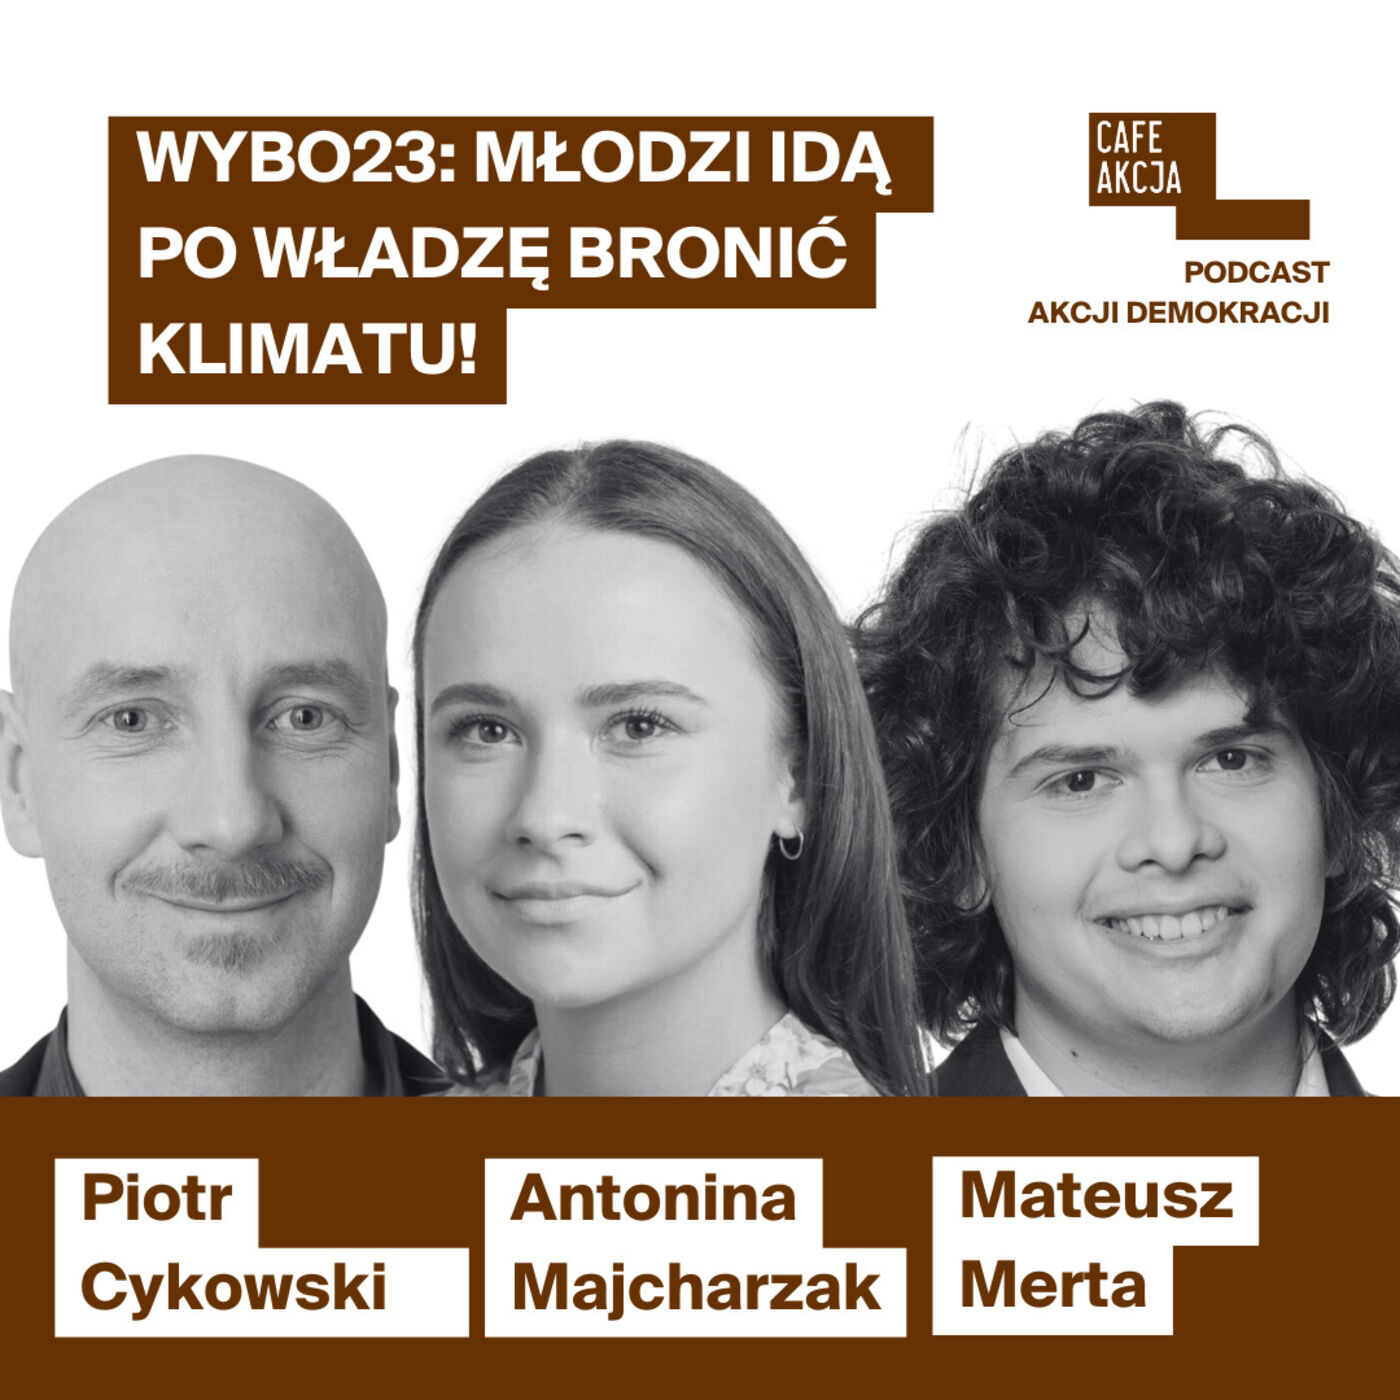 WYBO23: Młodzi idą po władzę bronić klimatu. Antonina Majchrzak (KO) & Mateusz Merta (L)